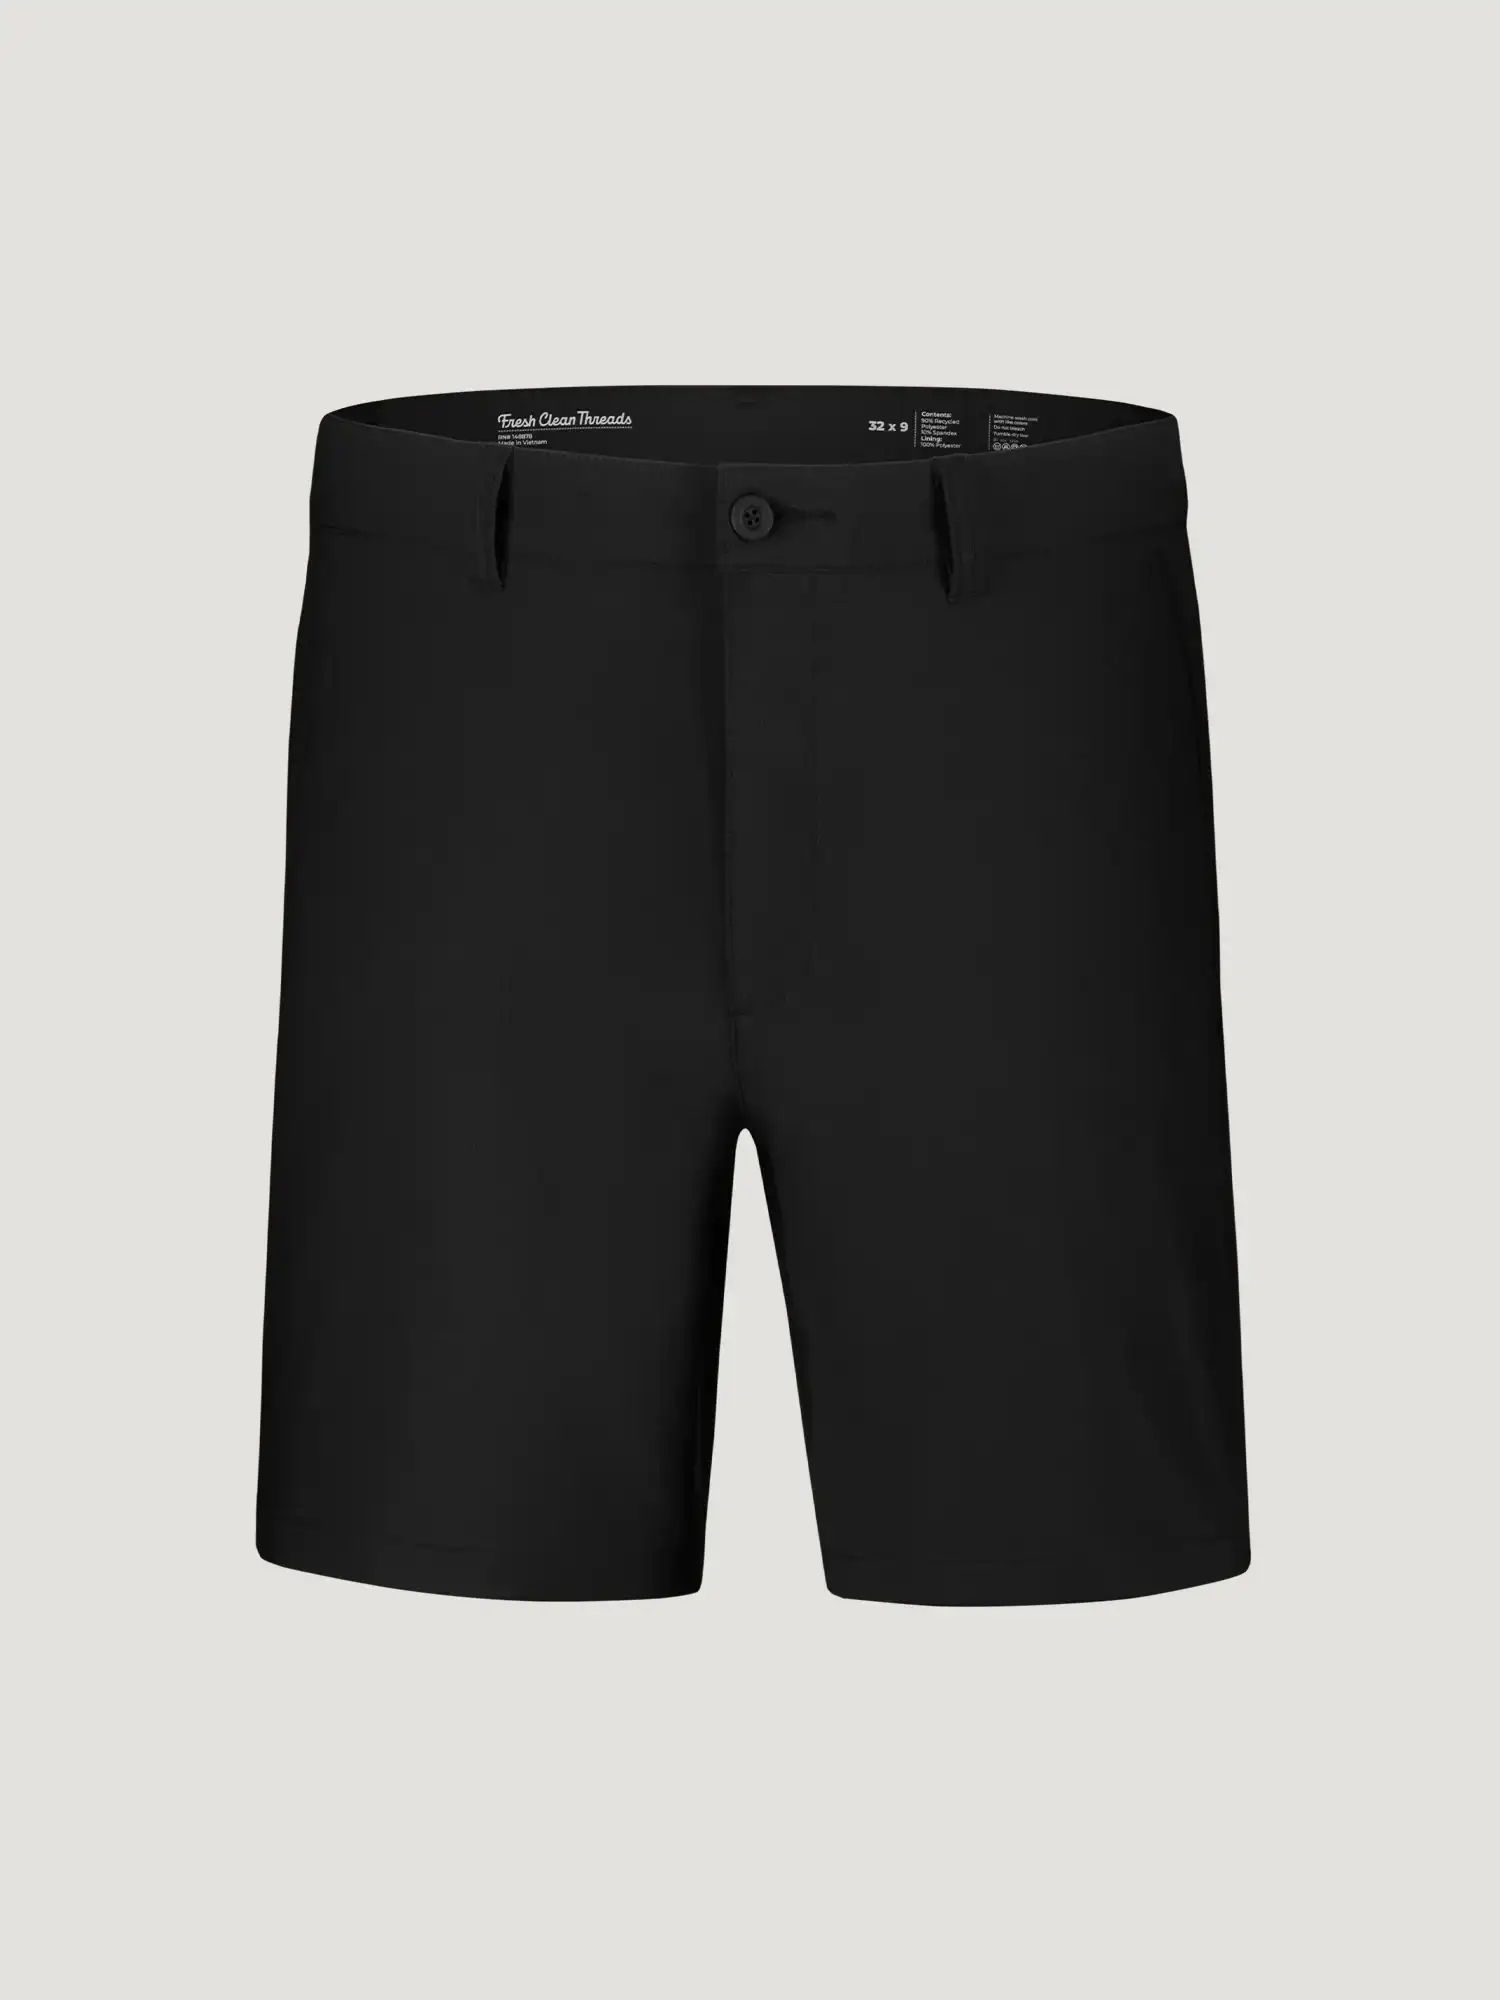 Image of Black Everyday Shorts 2.0